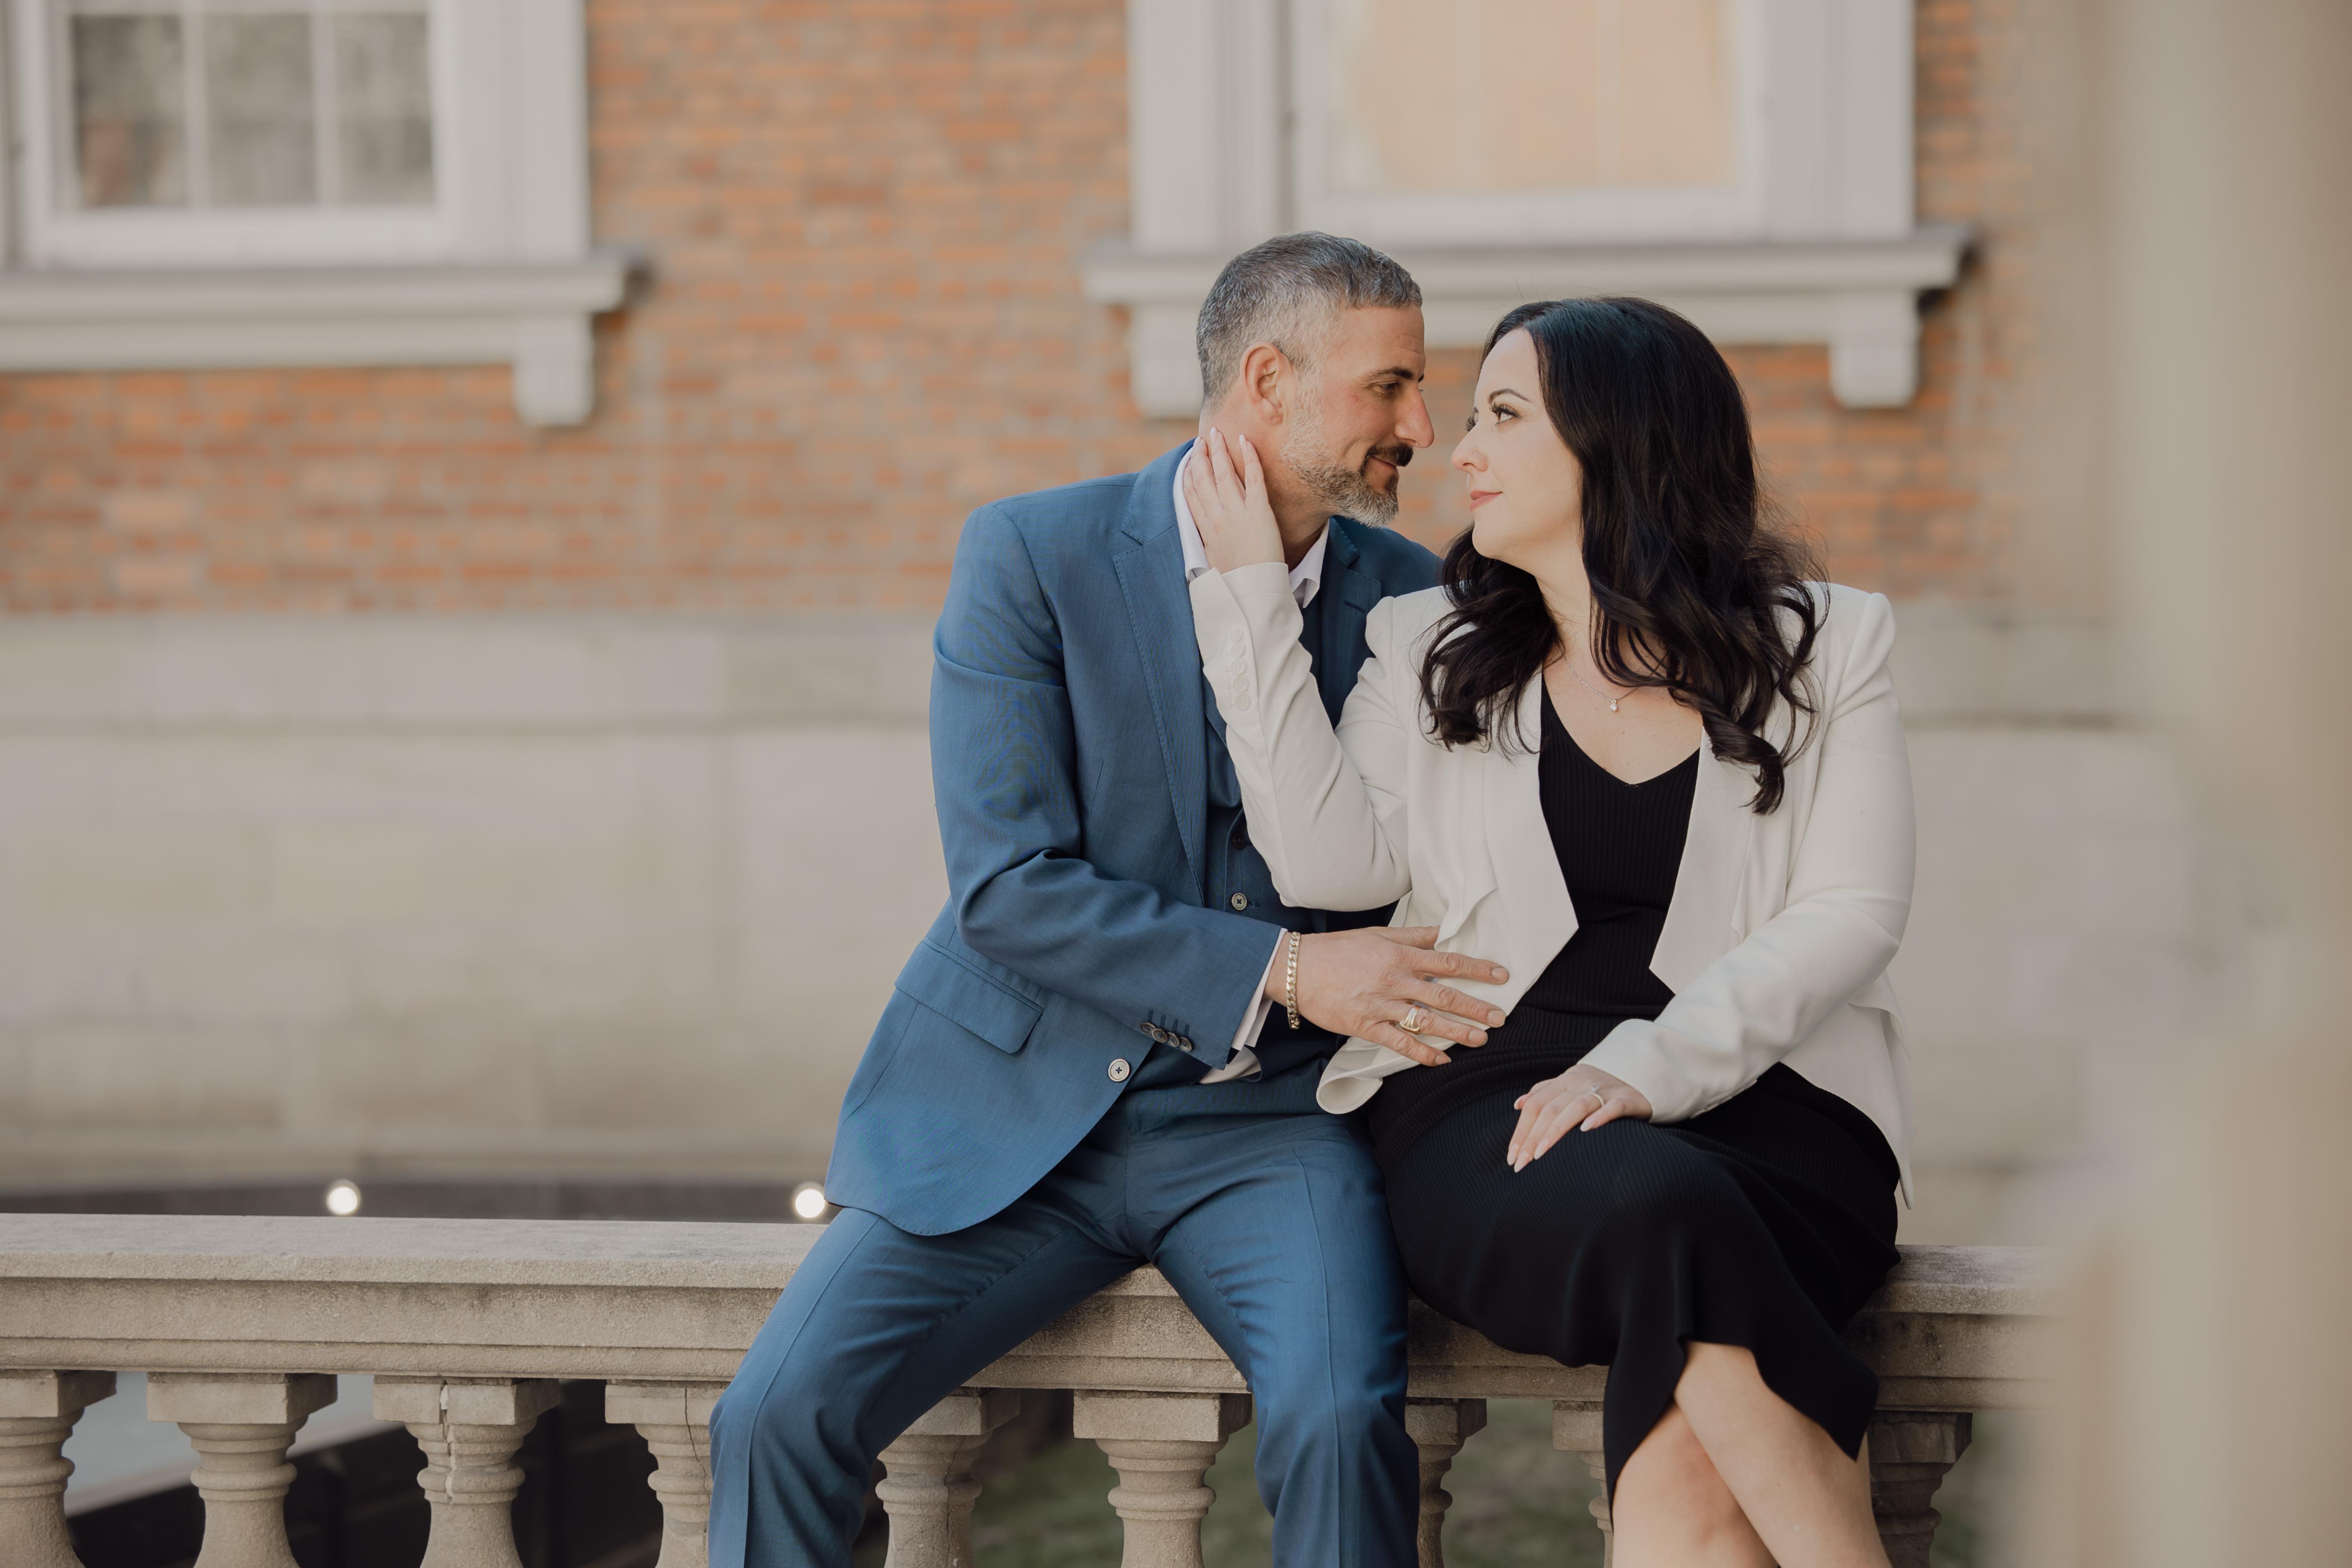 The Wedding Website of Carmela Geraci and Saverio Stea